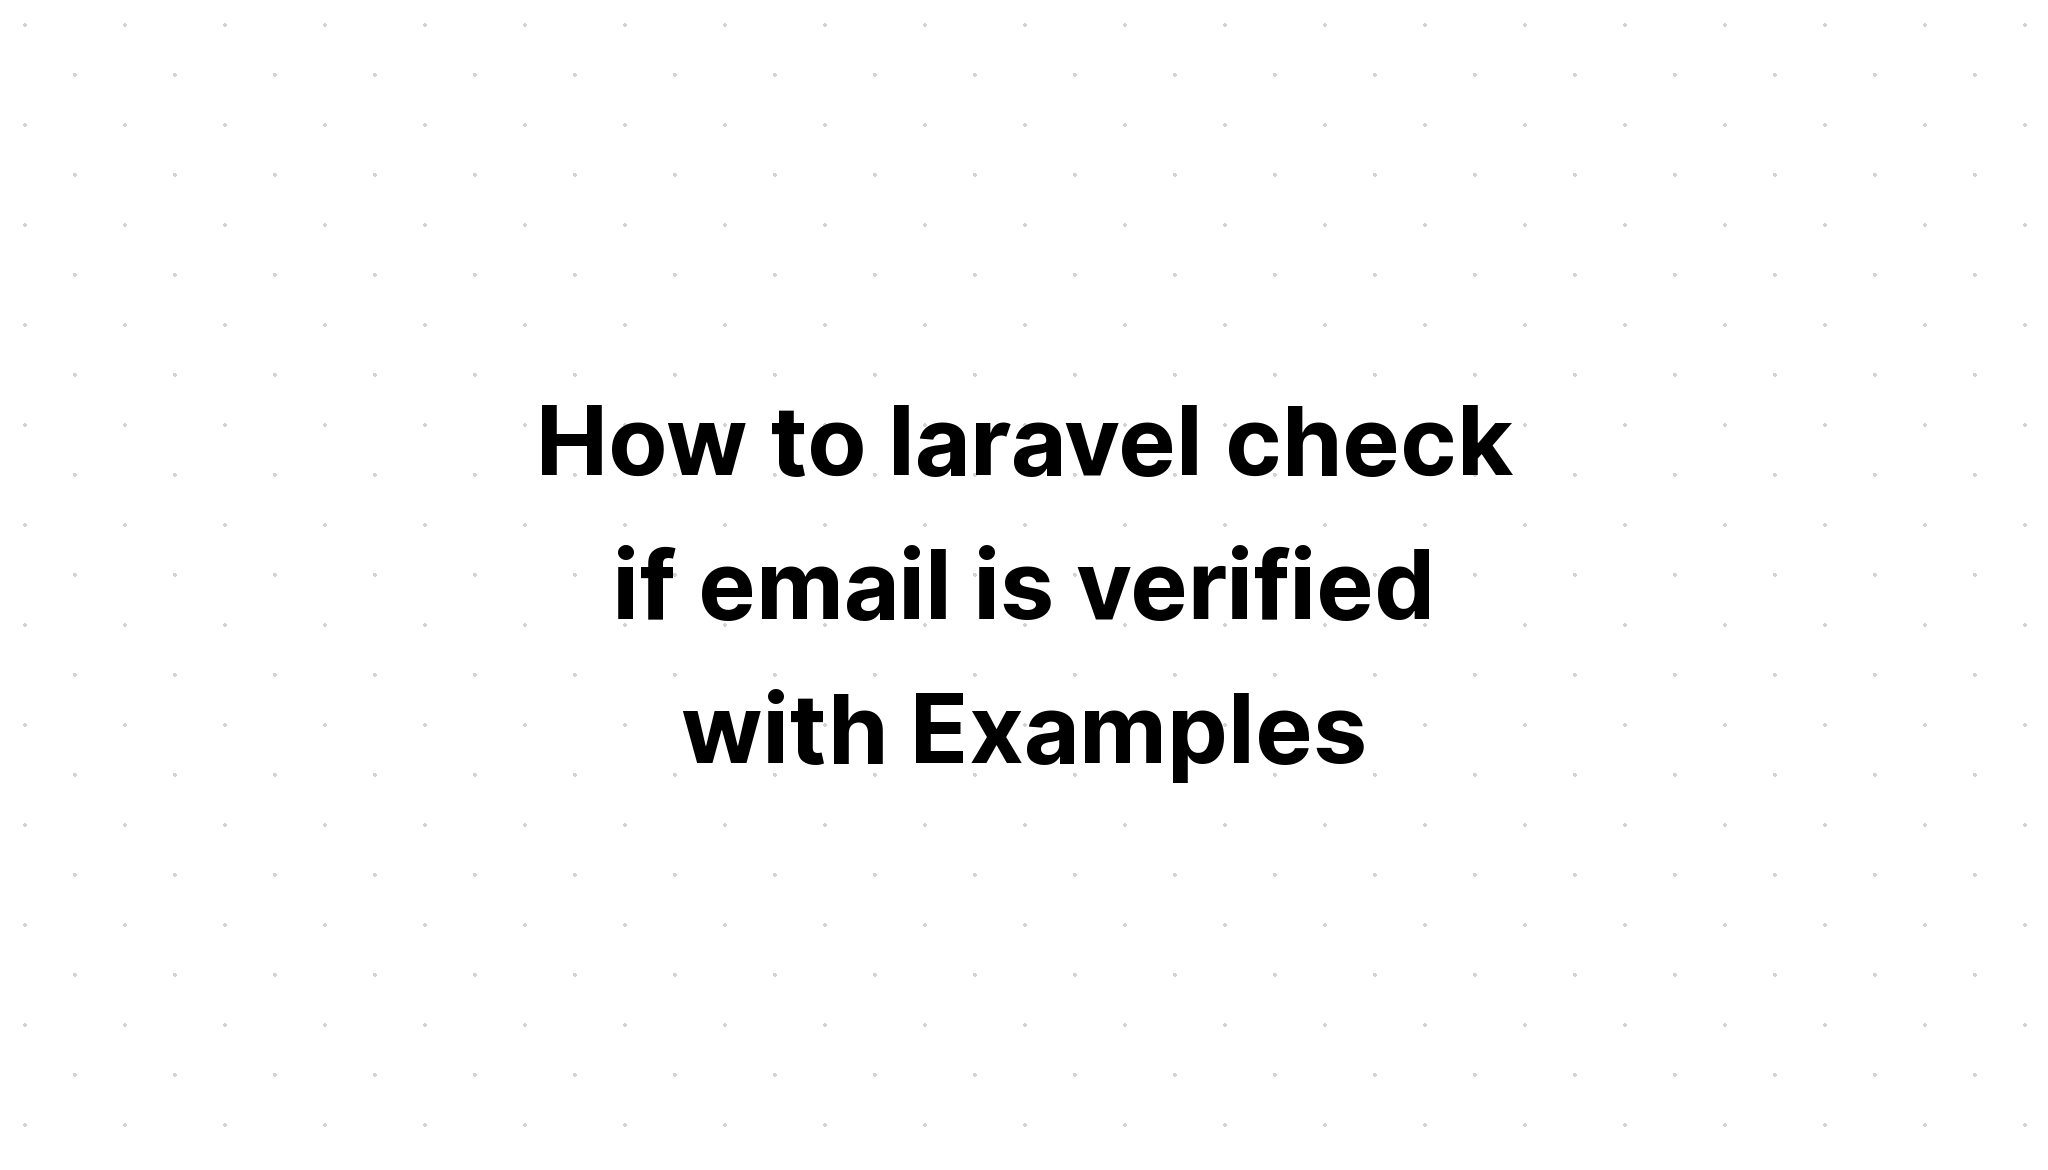 Cách laravel kiểm tra xem email đã được xác minh hay chưa bằng Ví dụ